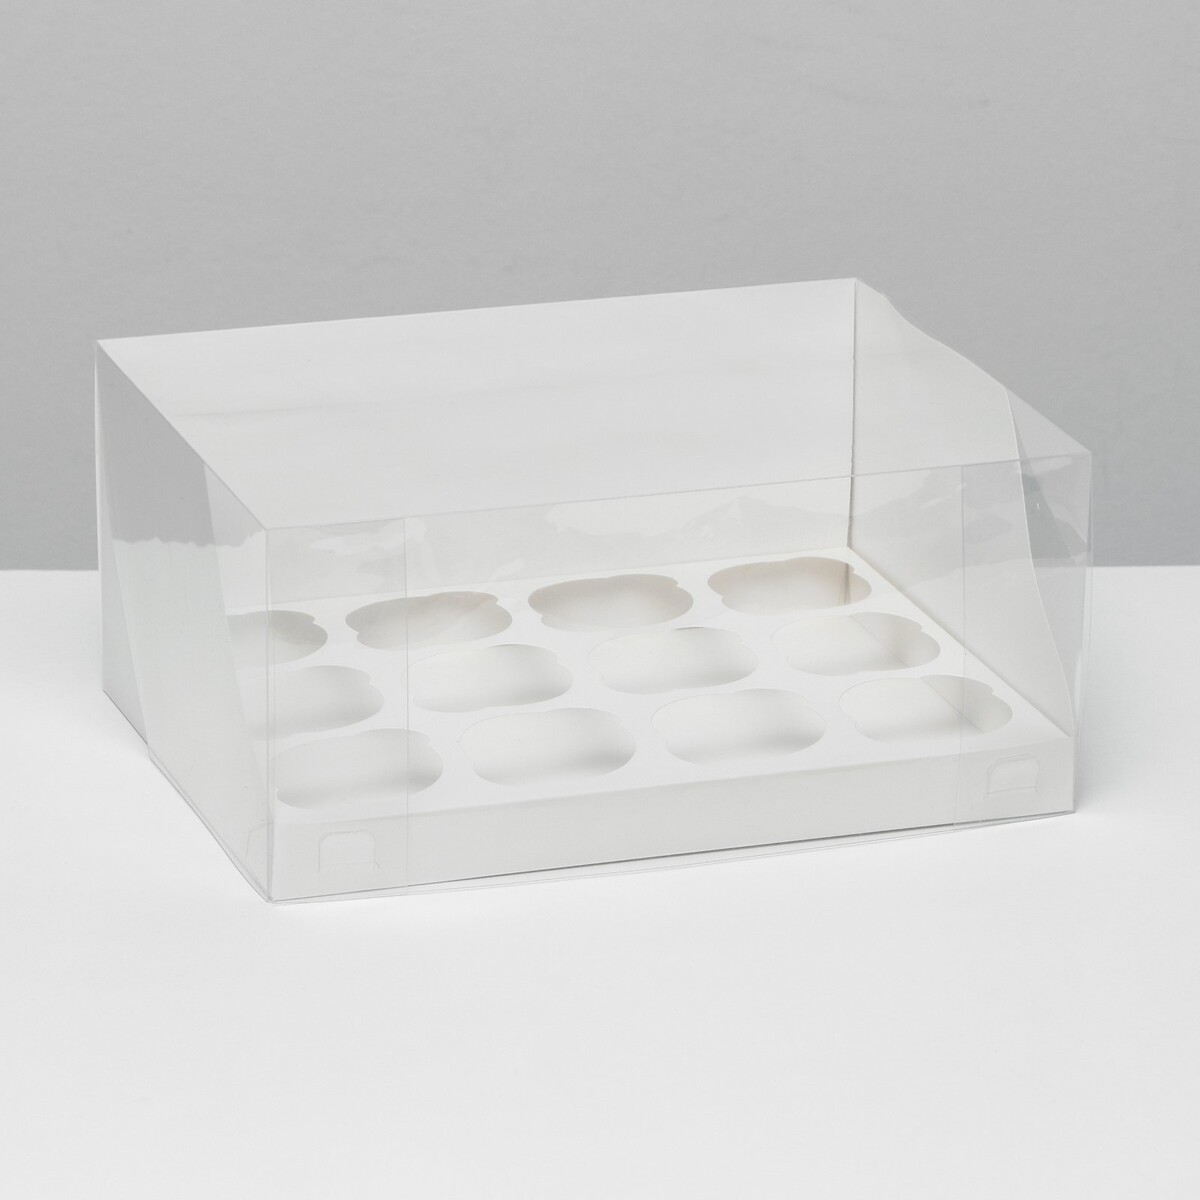 Кондитерская складная коробка для 12 капкейков белая, 31 x 24 x 14 см кондитерская складная коробка для 9 капкейков крафт 23 5 x 23 x 14